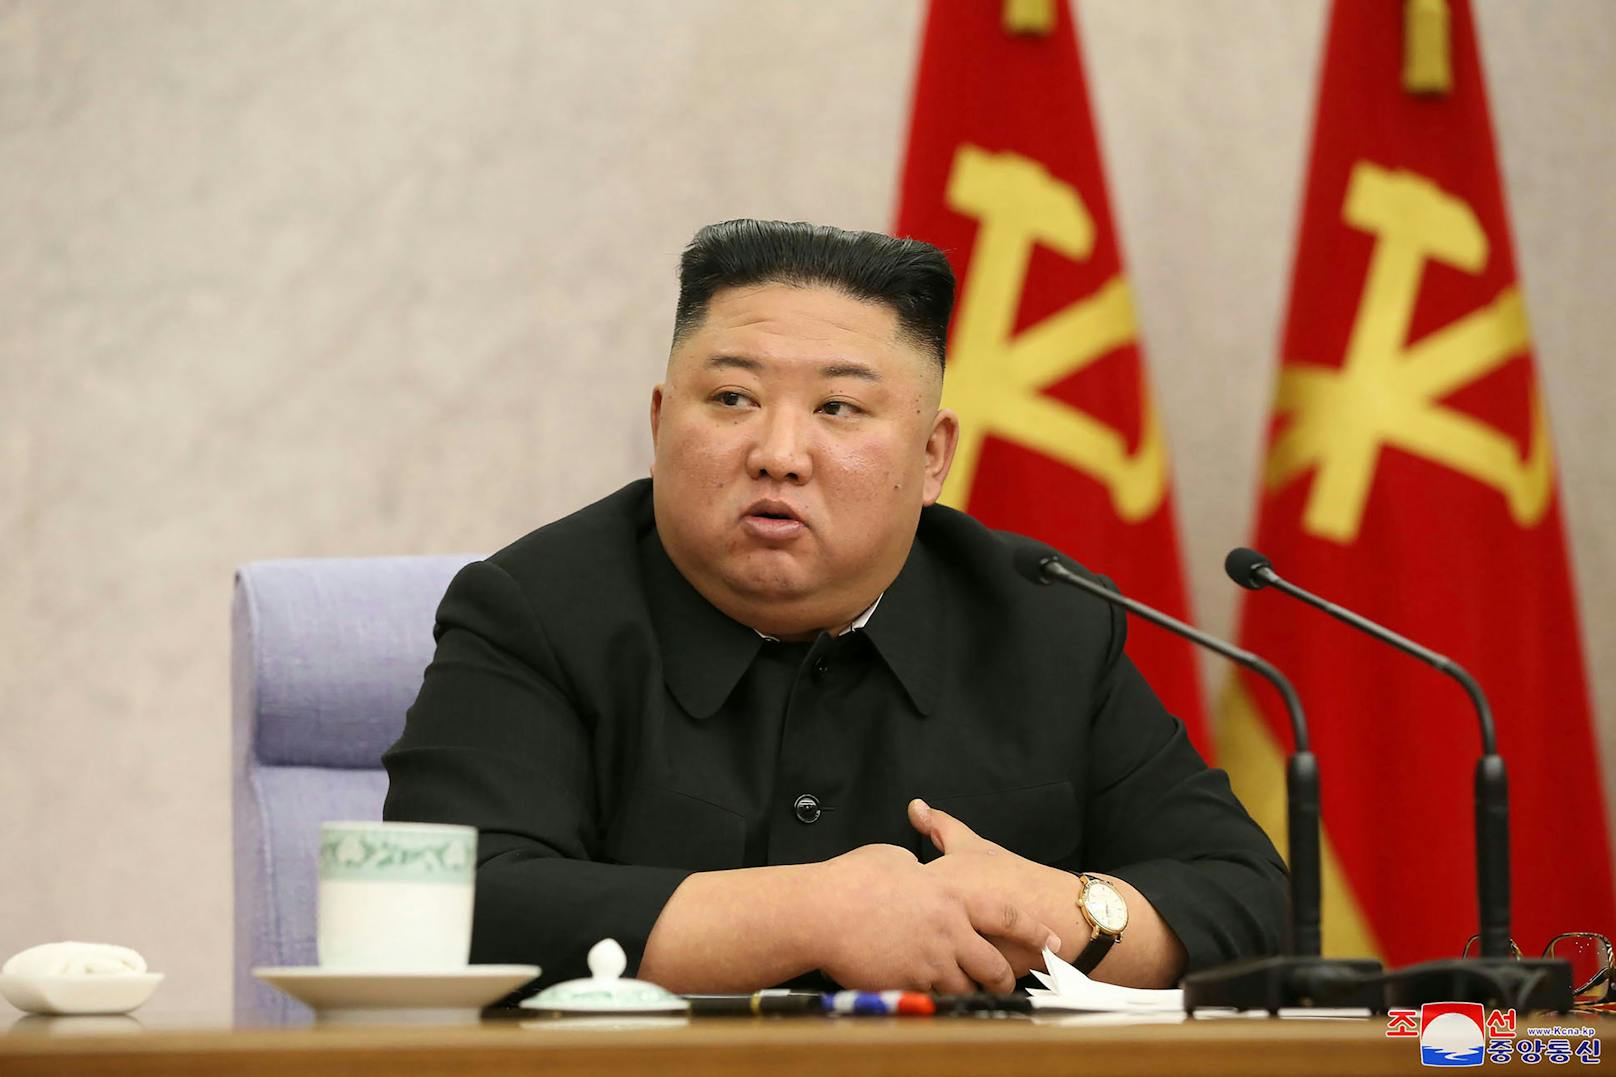 Noch in diesem, auf Februar 2021 datierten Bild, ist Kim Jong-un noch mit wohlgenährten Pausbacken und Doppelkinn zu sehen.